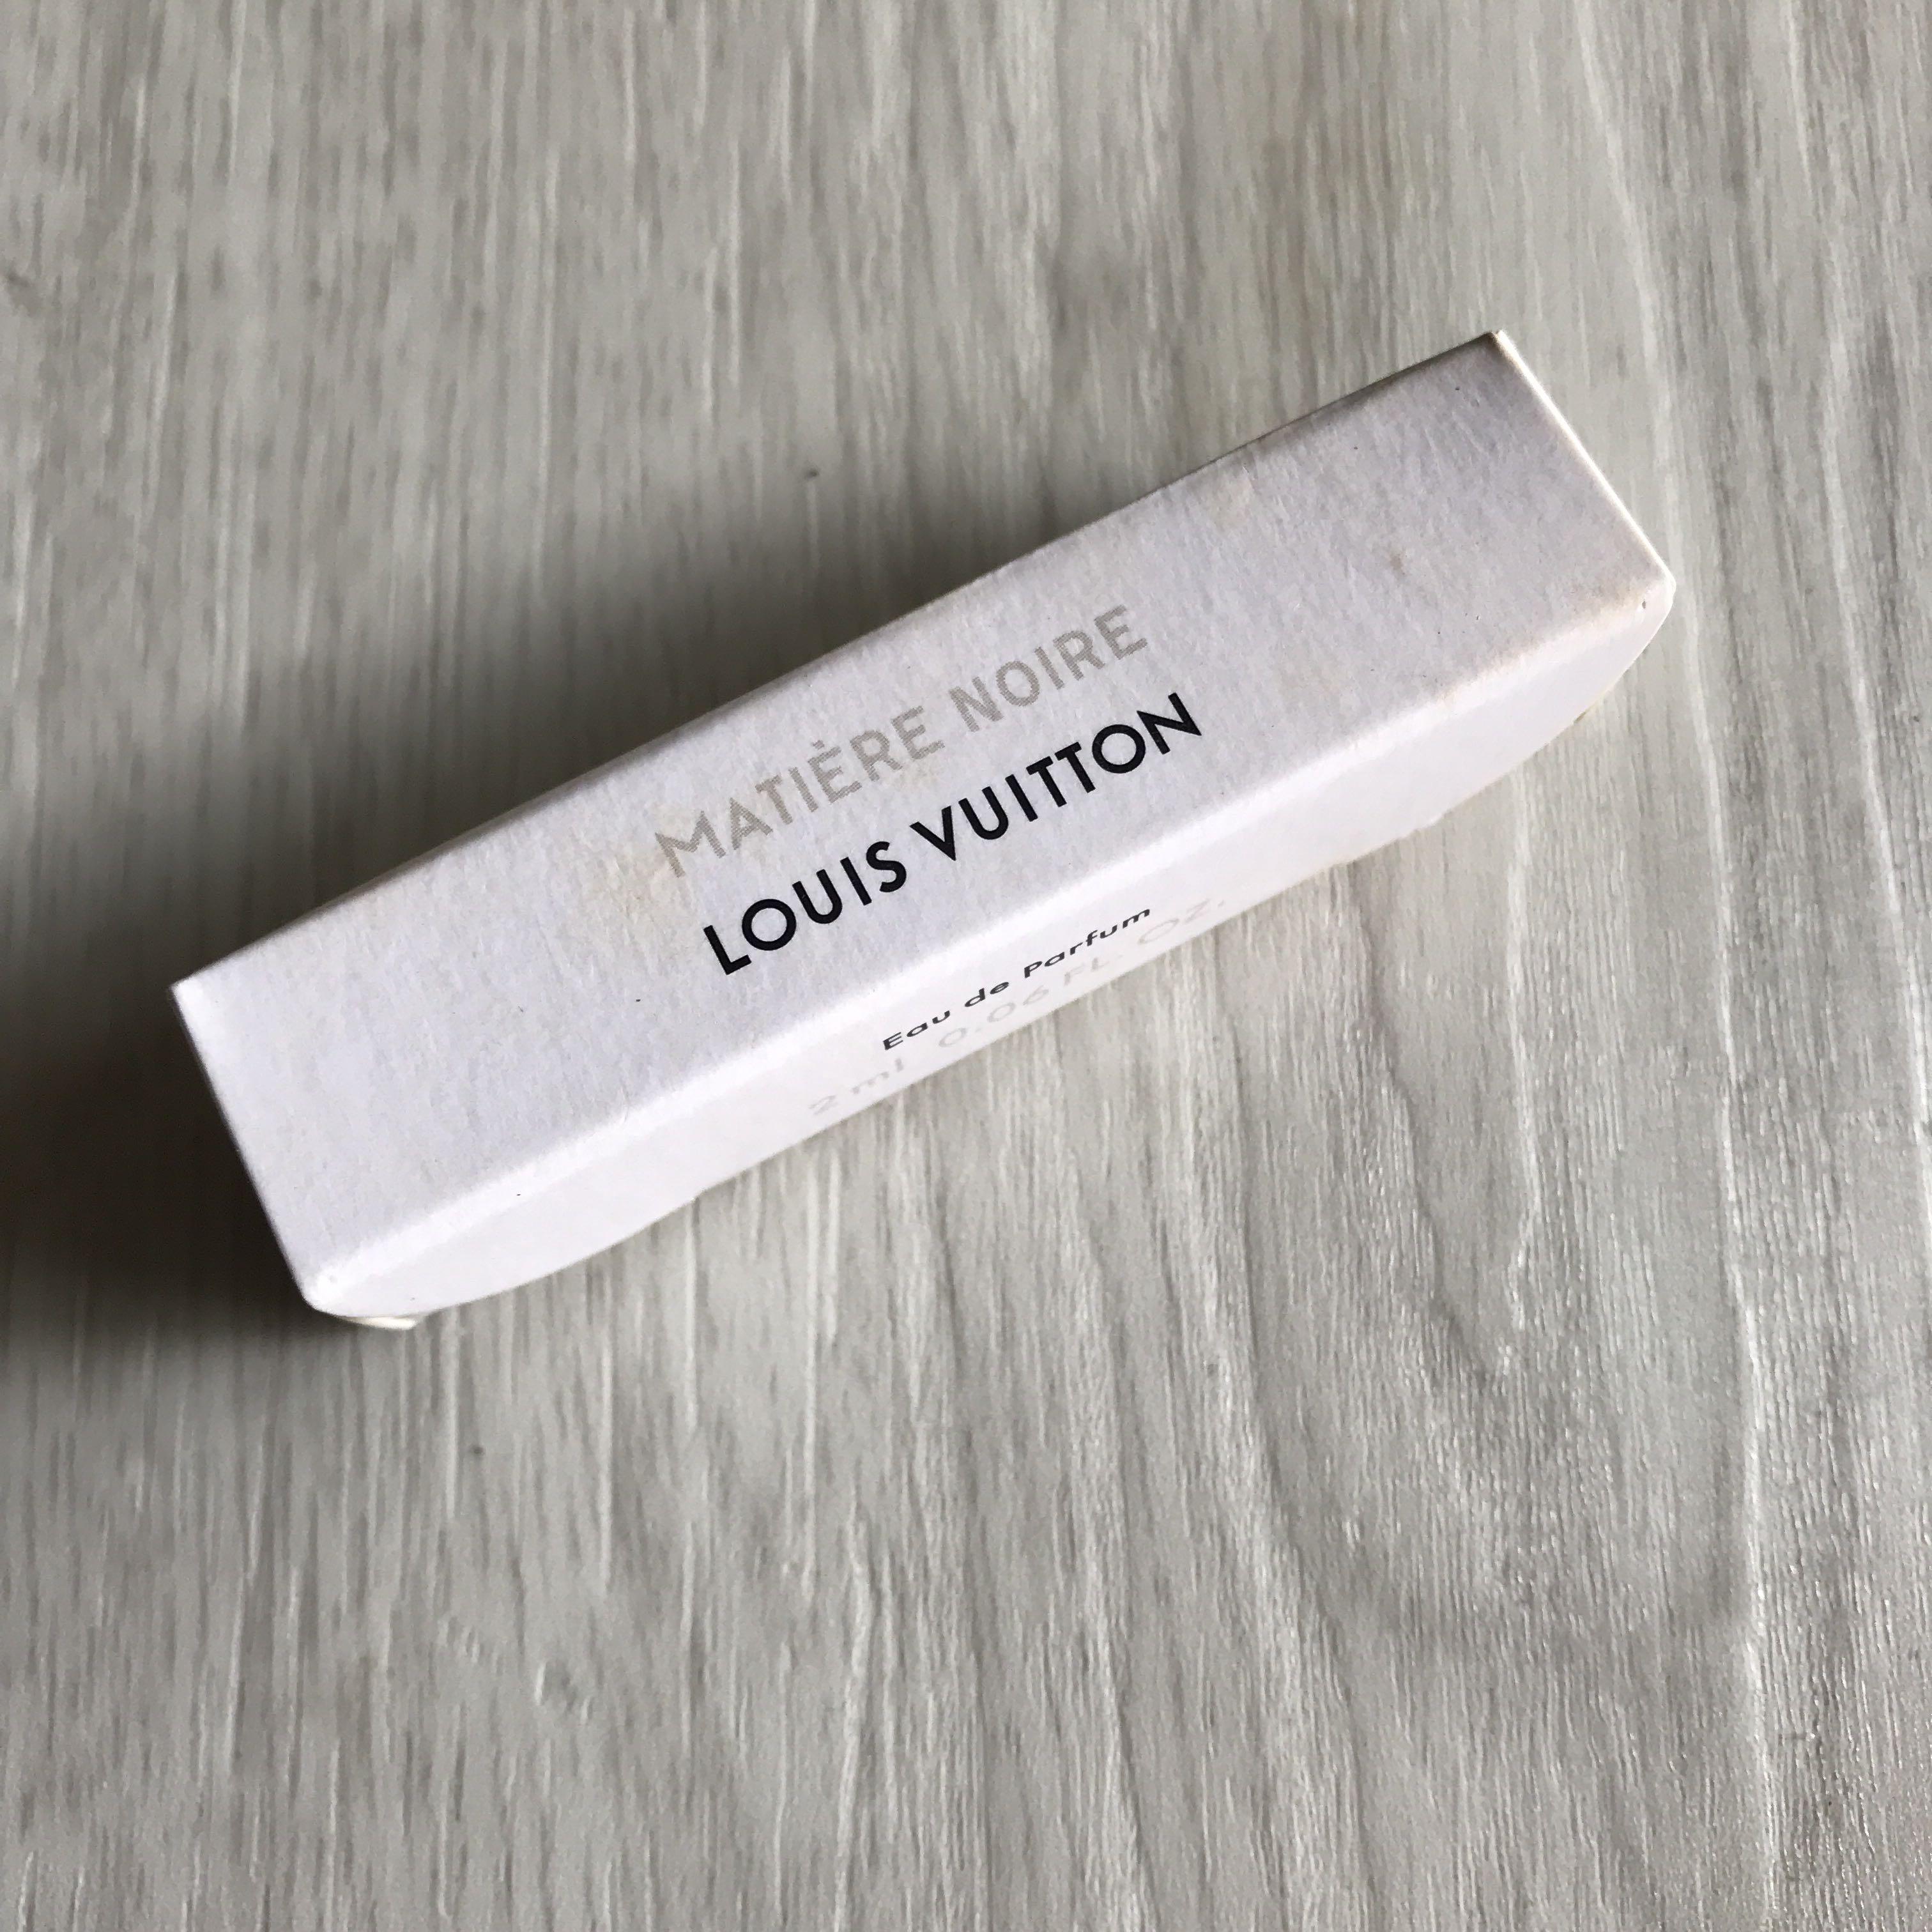 Louis Vuitton Ombre Nomade Eau De Parfum 2ml 0.06fl oz Guaranteed Authentic